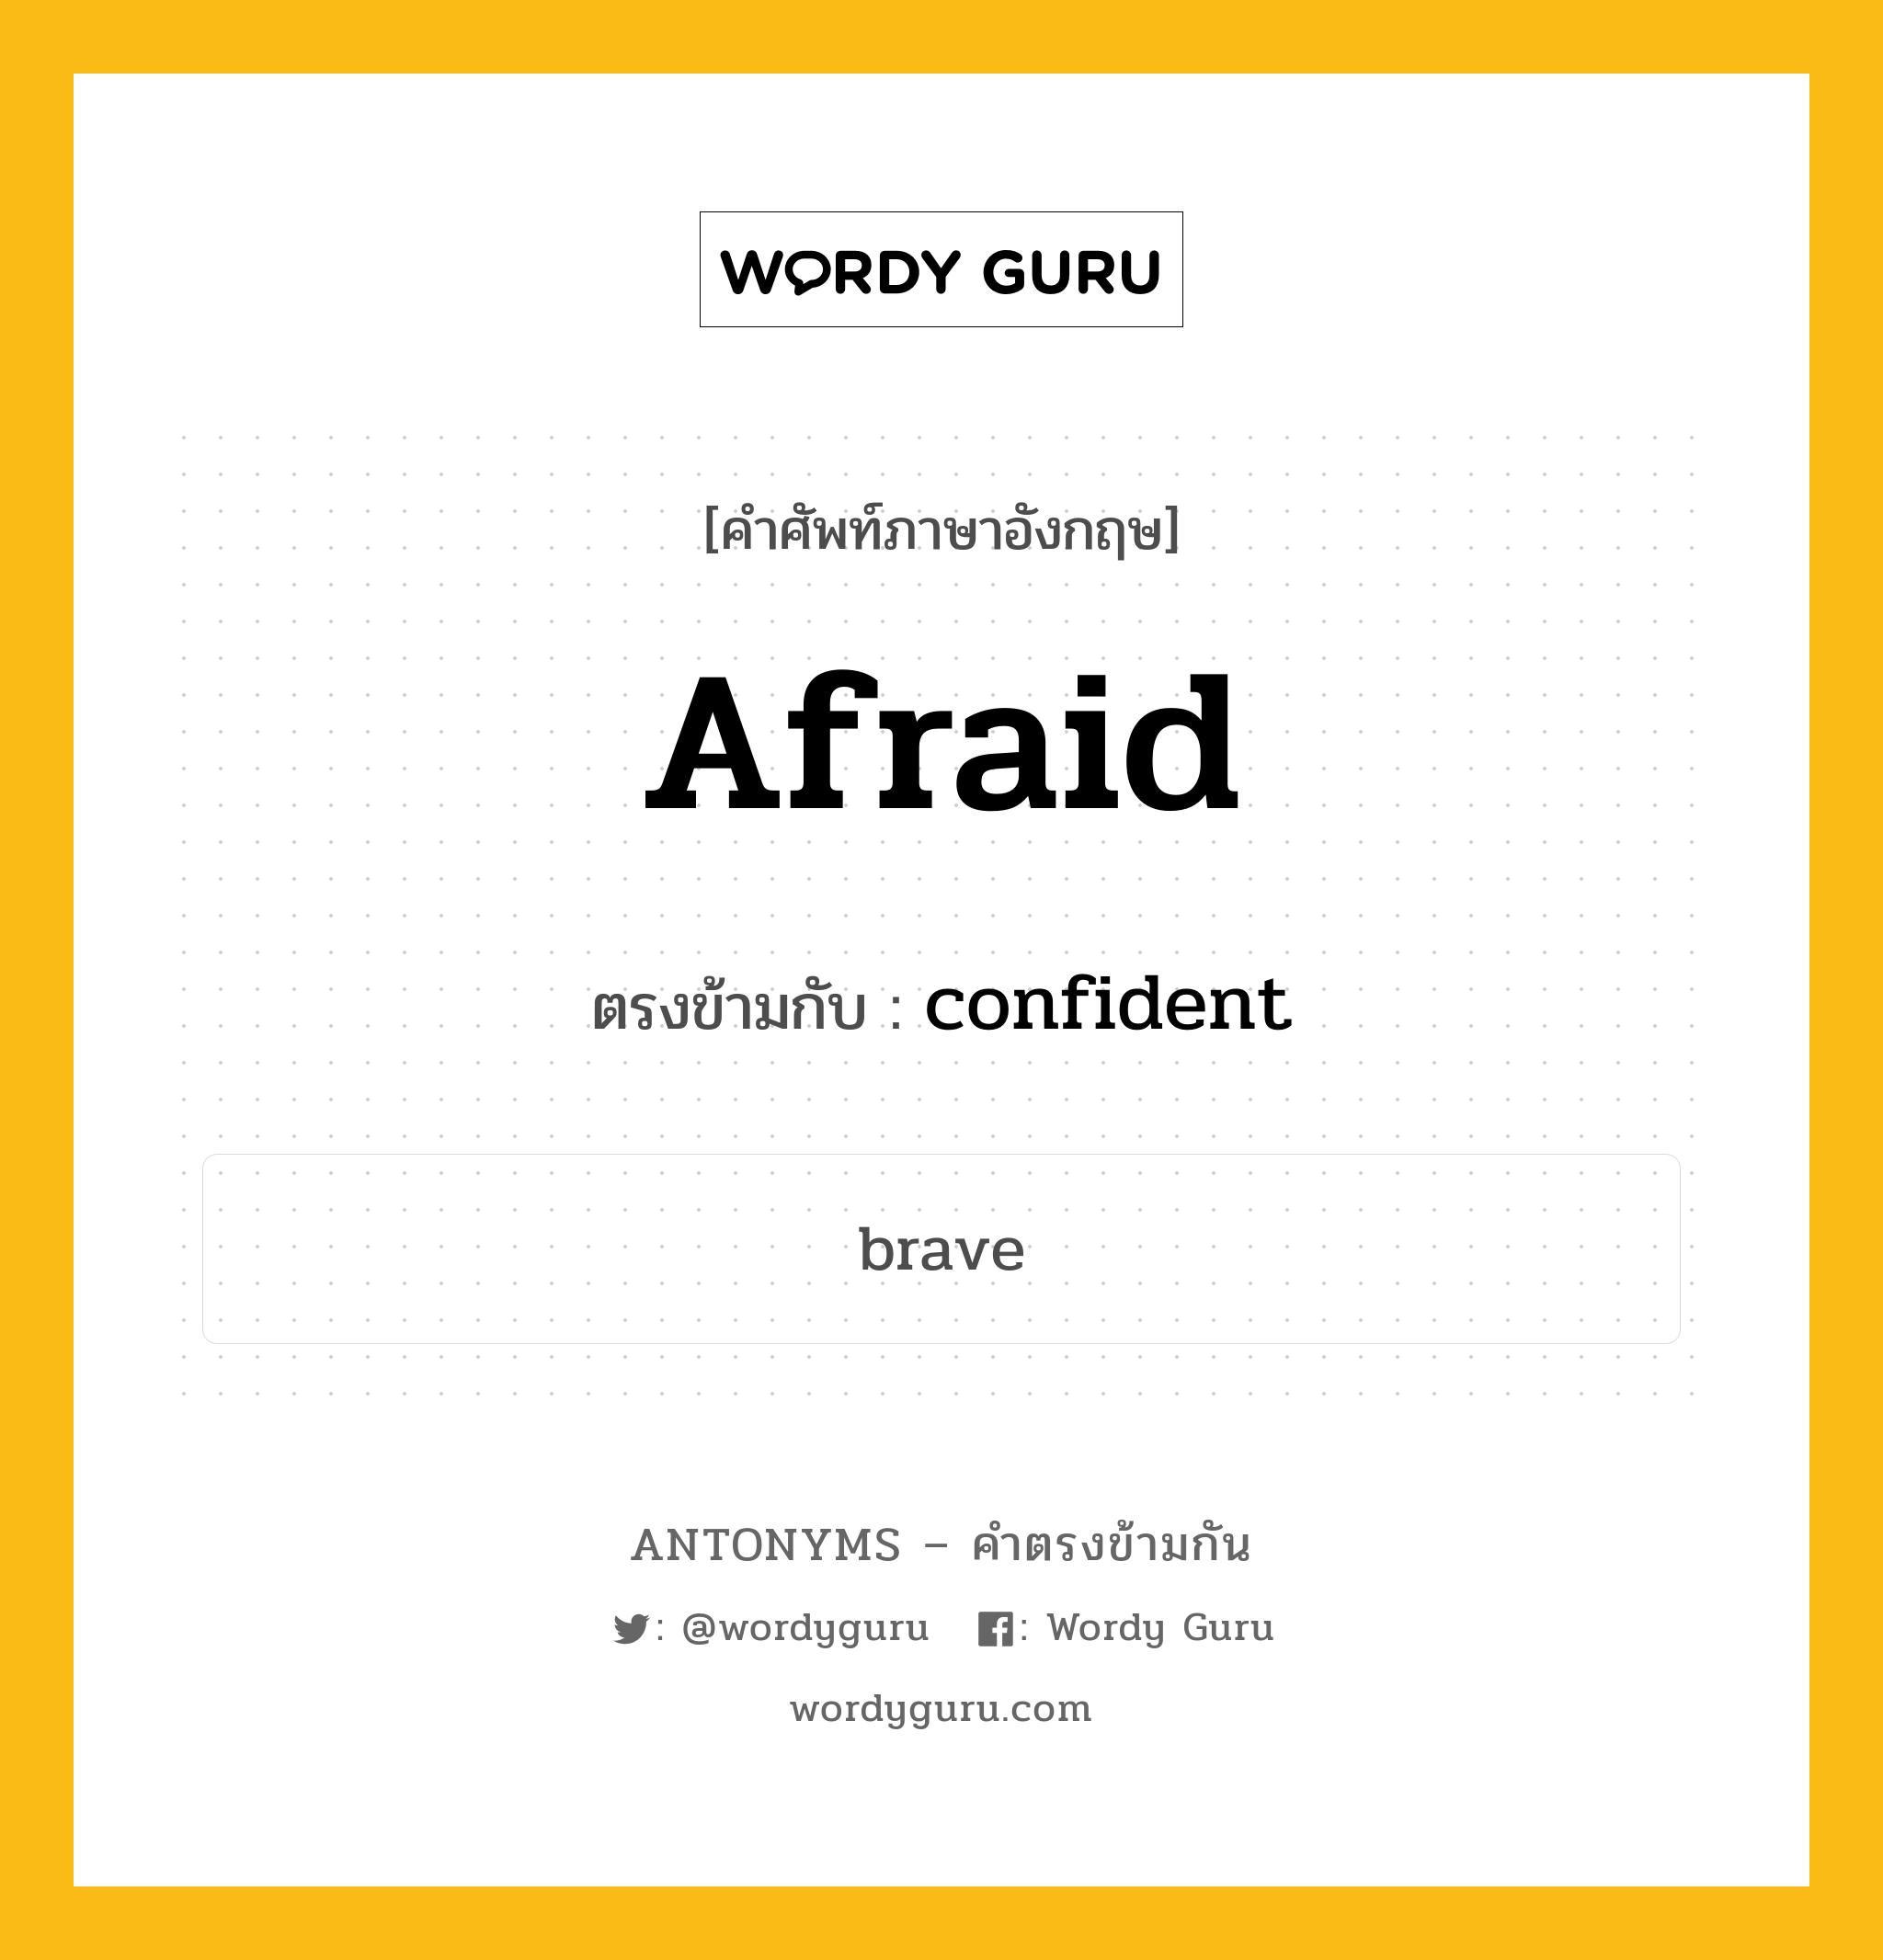 afraid เป็นคำตรงข้ามกับคำไหนบ้าง?, คำศัพท์ภาษาอังกฤษ afraid ตรงข้ามกับ confident หมวด confident